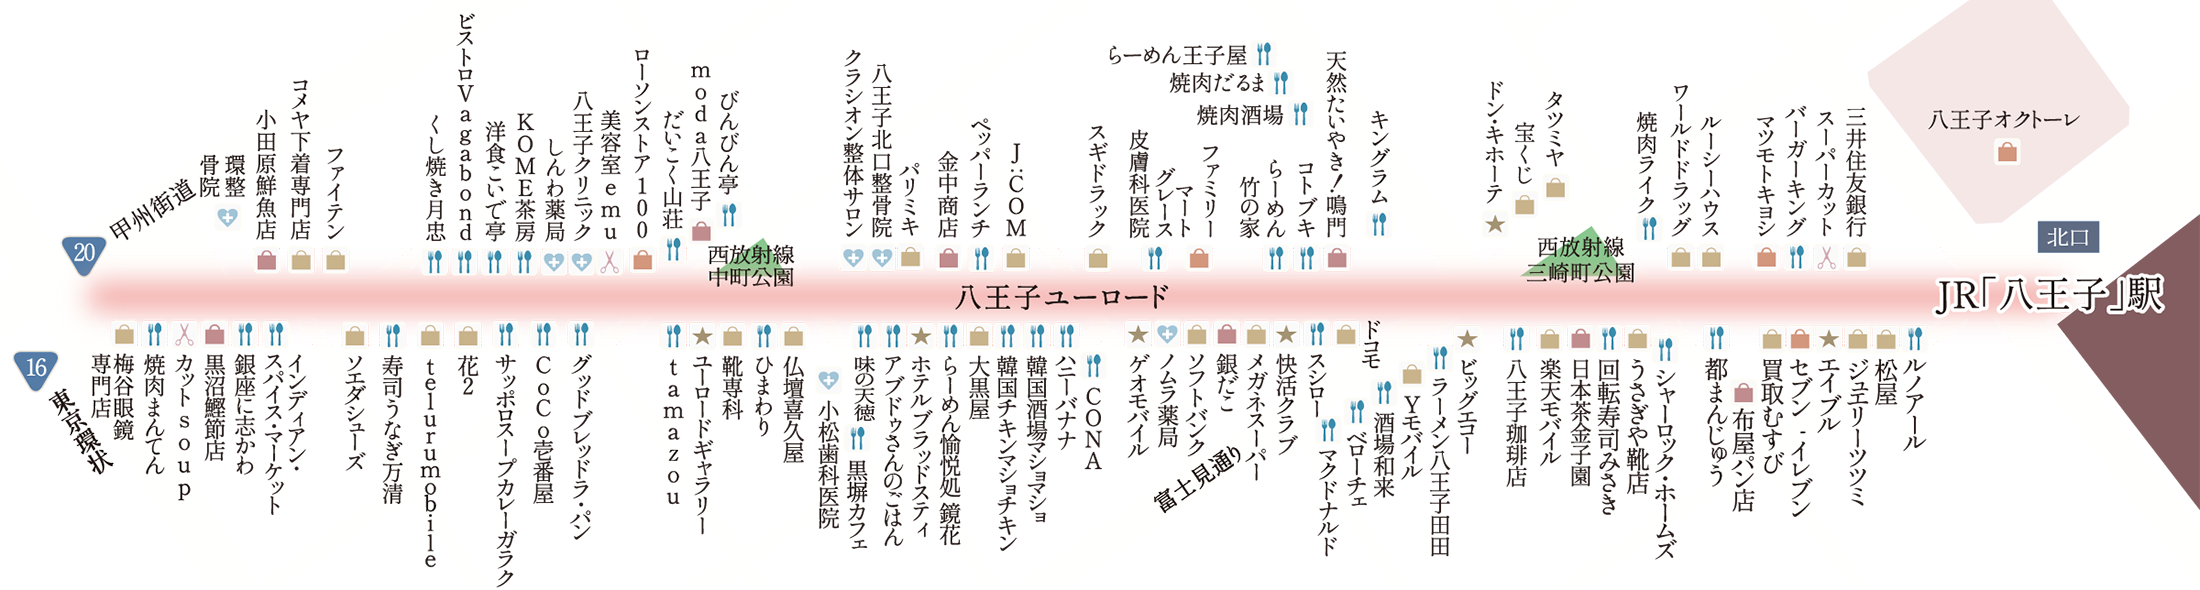 八王子ユーロード商店街概念図